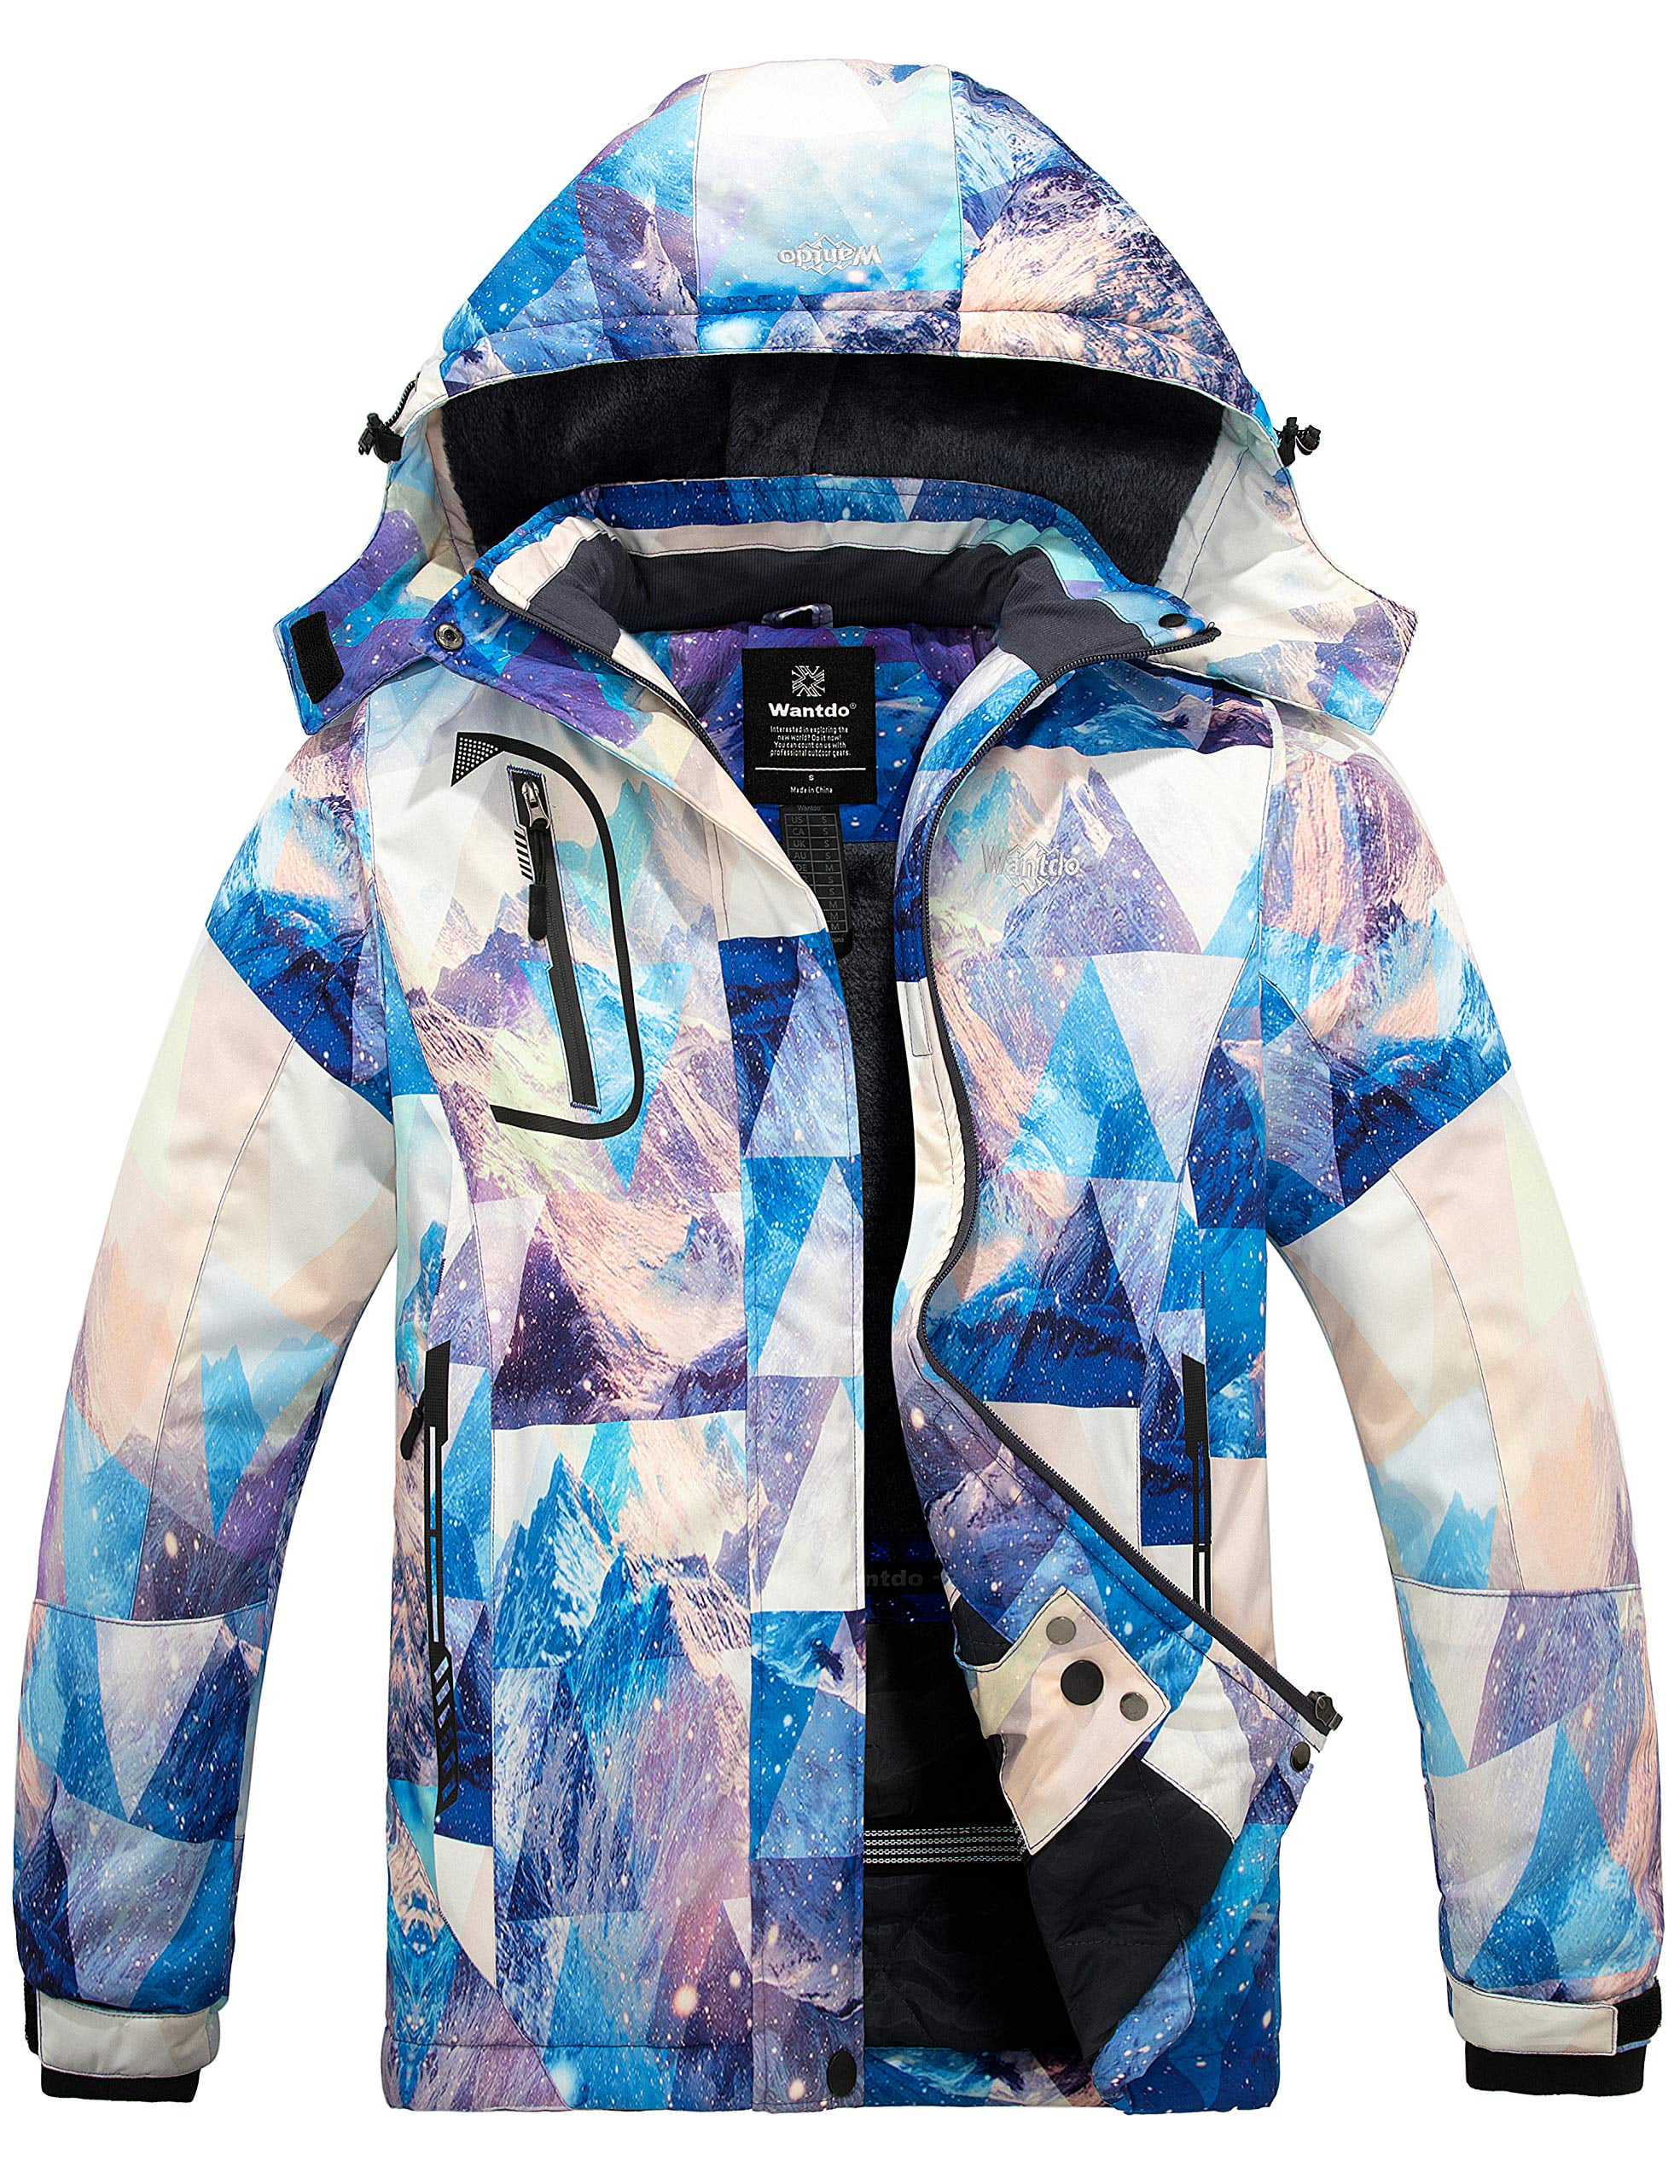 Wantdo Women's Waterproof Ski Jacket Mountain Windproof Rain Jacket Winter Warm Snow Coat 